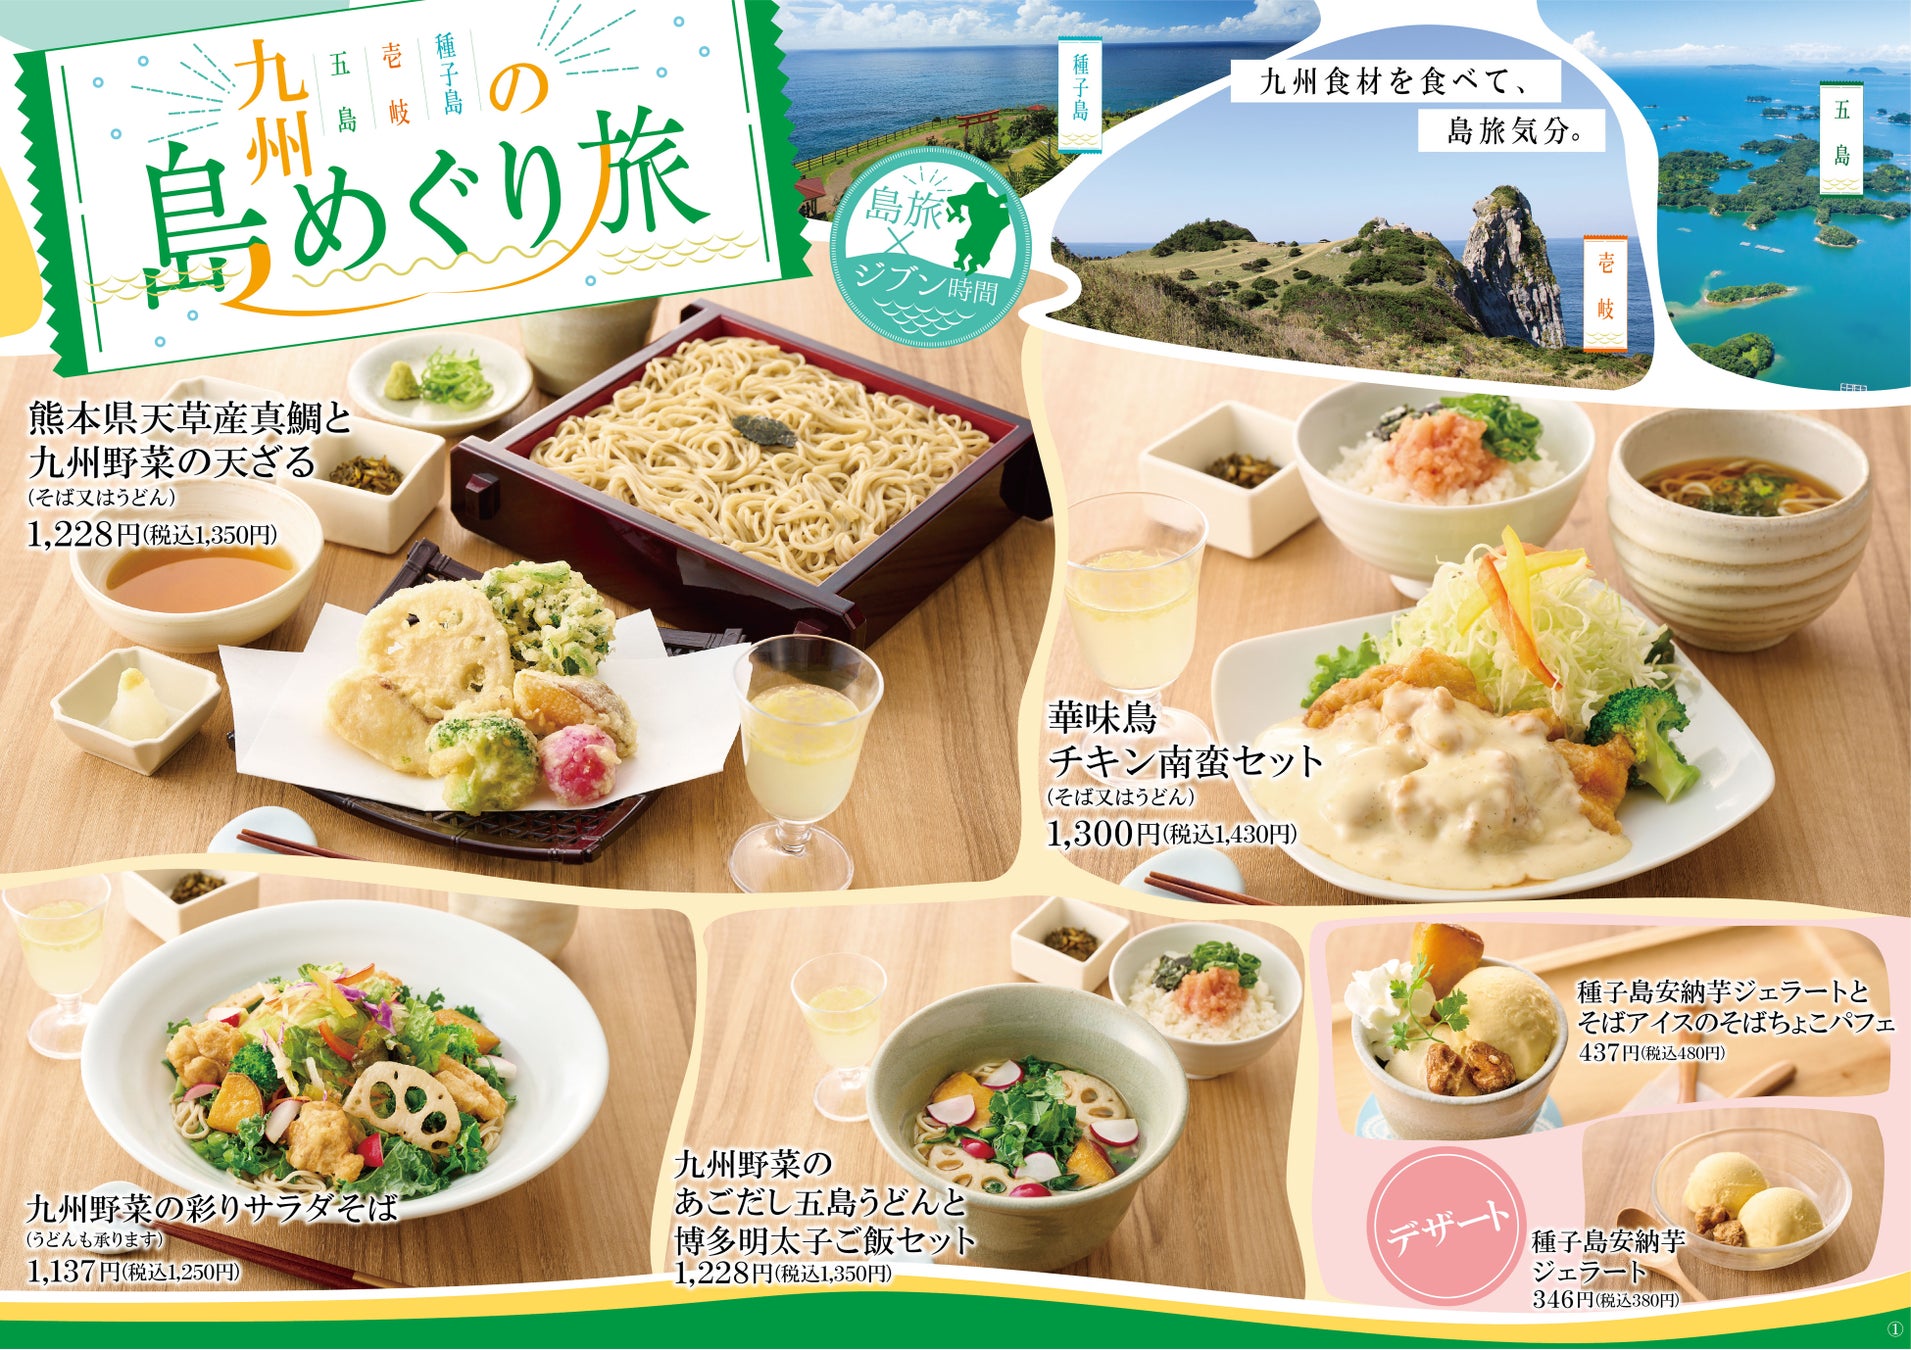 「日清食品 ロングセラー袋麺 あたりつきキャンペーン」(2月上旬から実施)